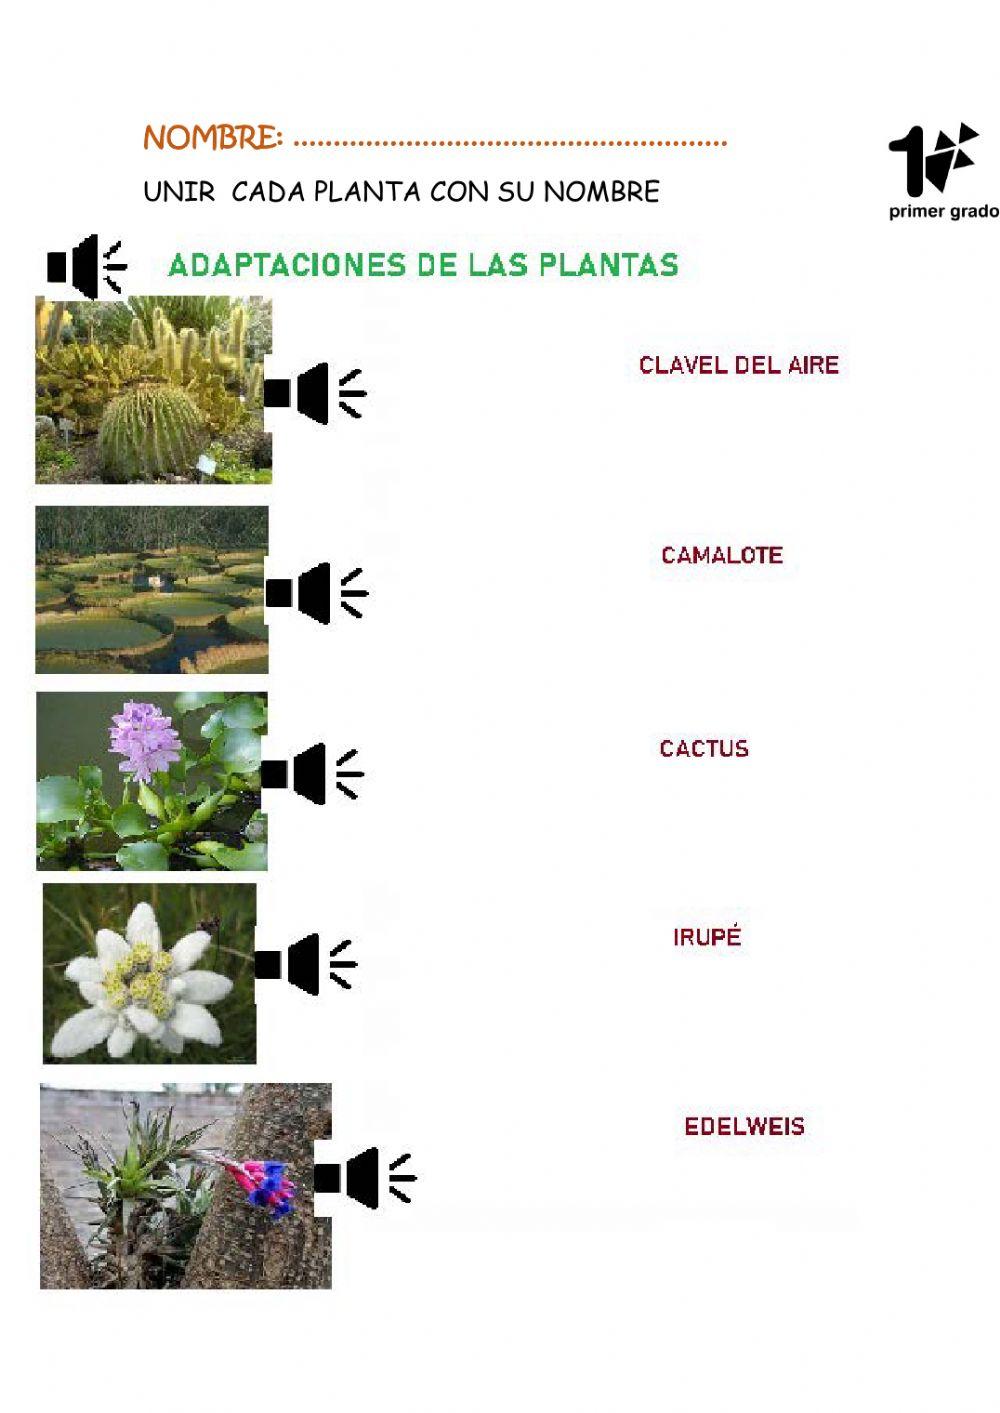 Adaptaciones de las plantas